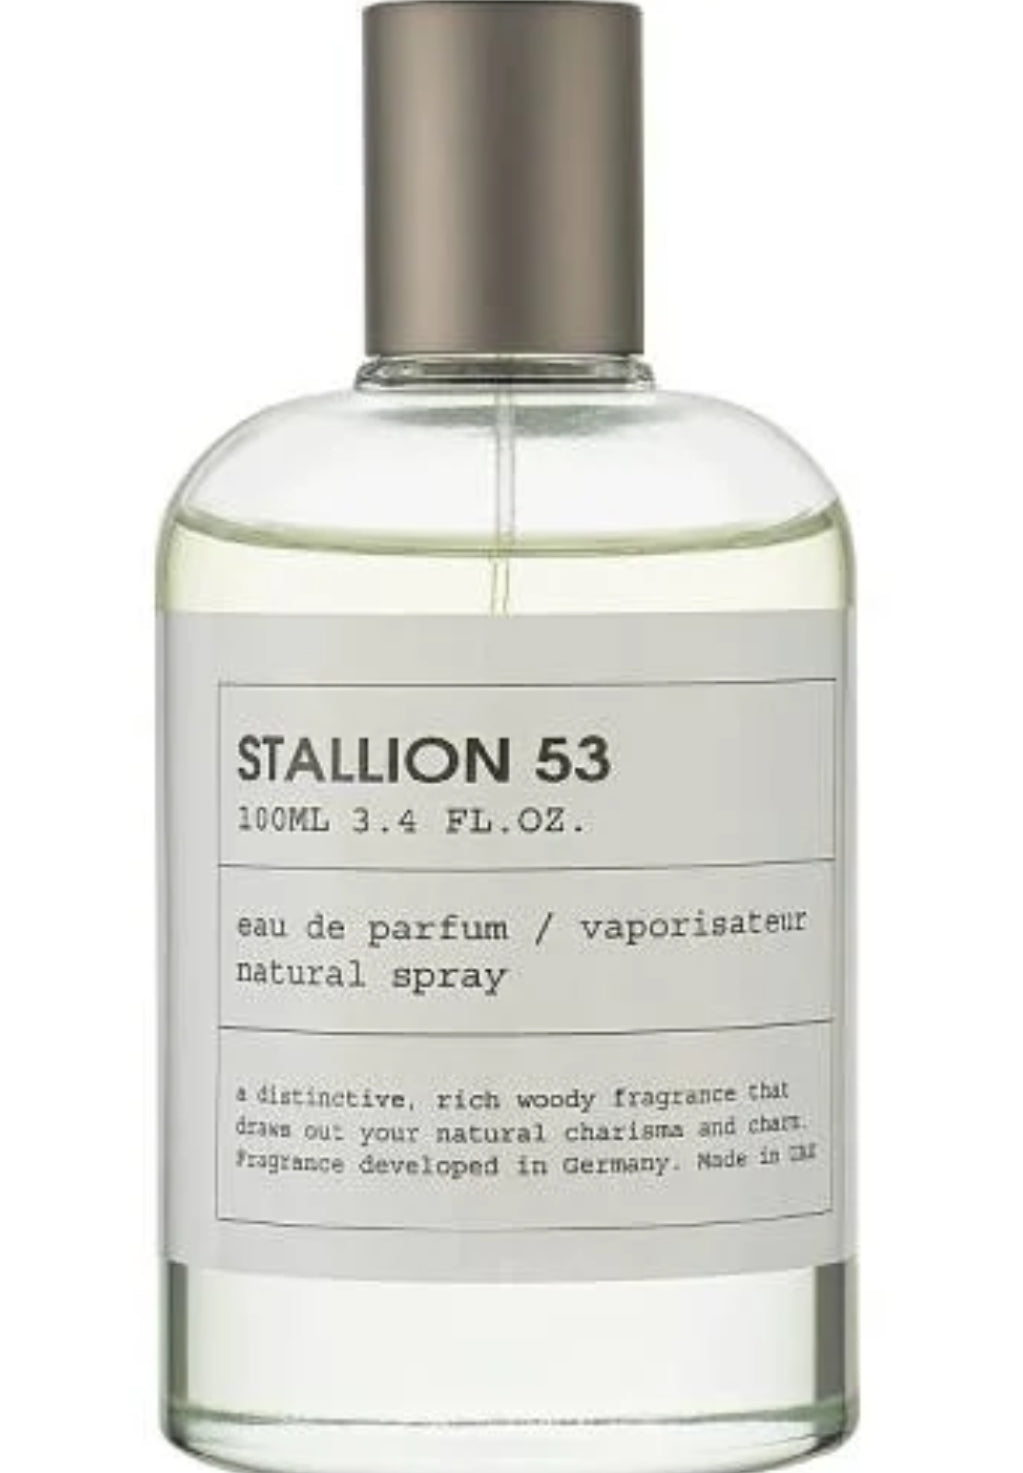 Stallion 53 Emper